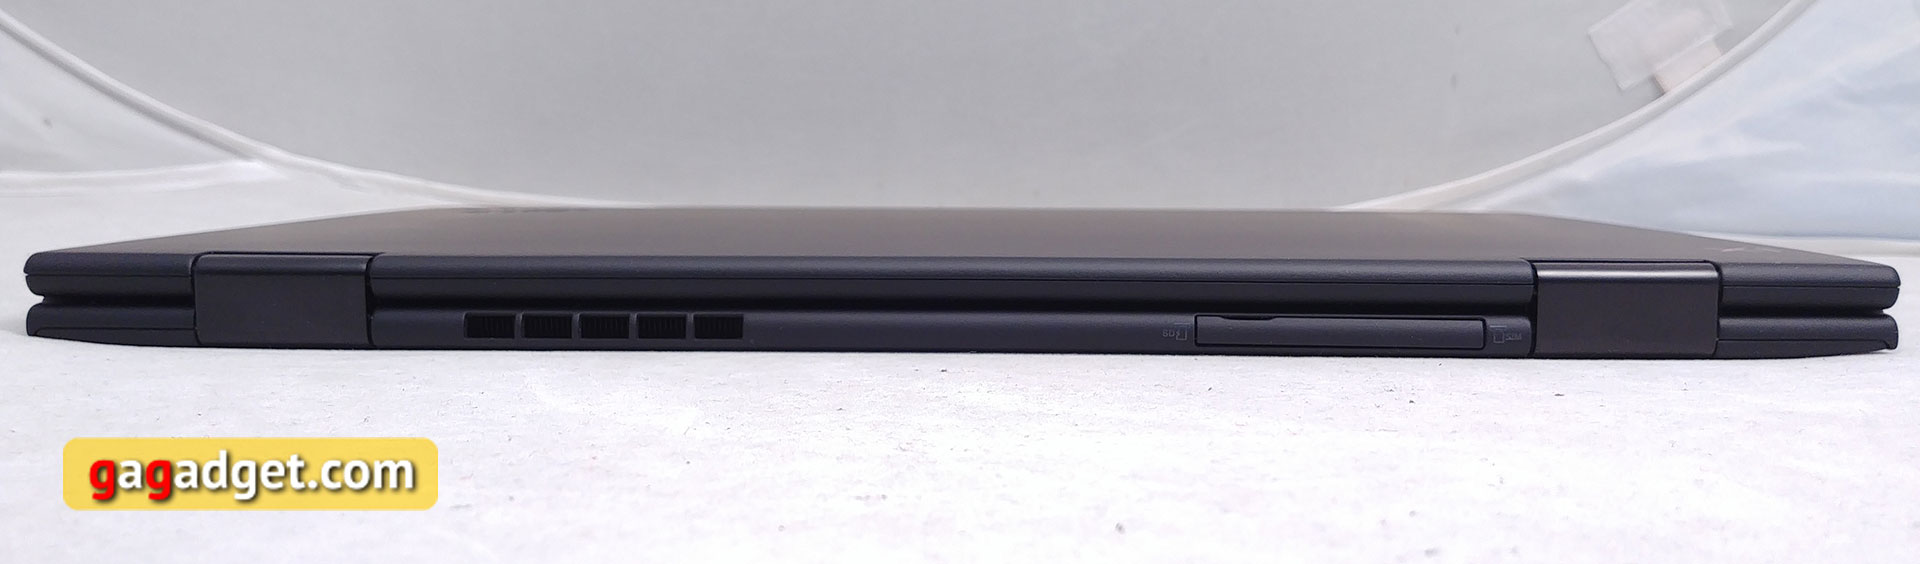 Обзор Lenovo ThinkPad X1 Yoga (3 gen): топовый трансформируемый "бизнес-ноутбук" с впечатляющей ценой-9